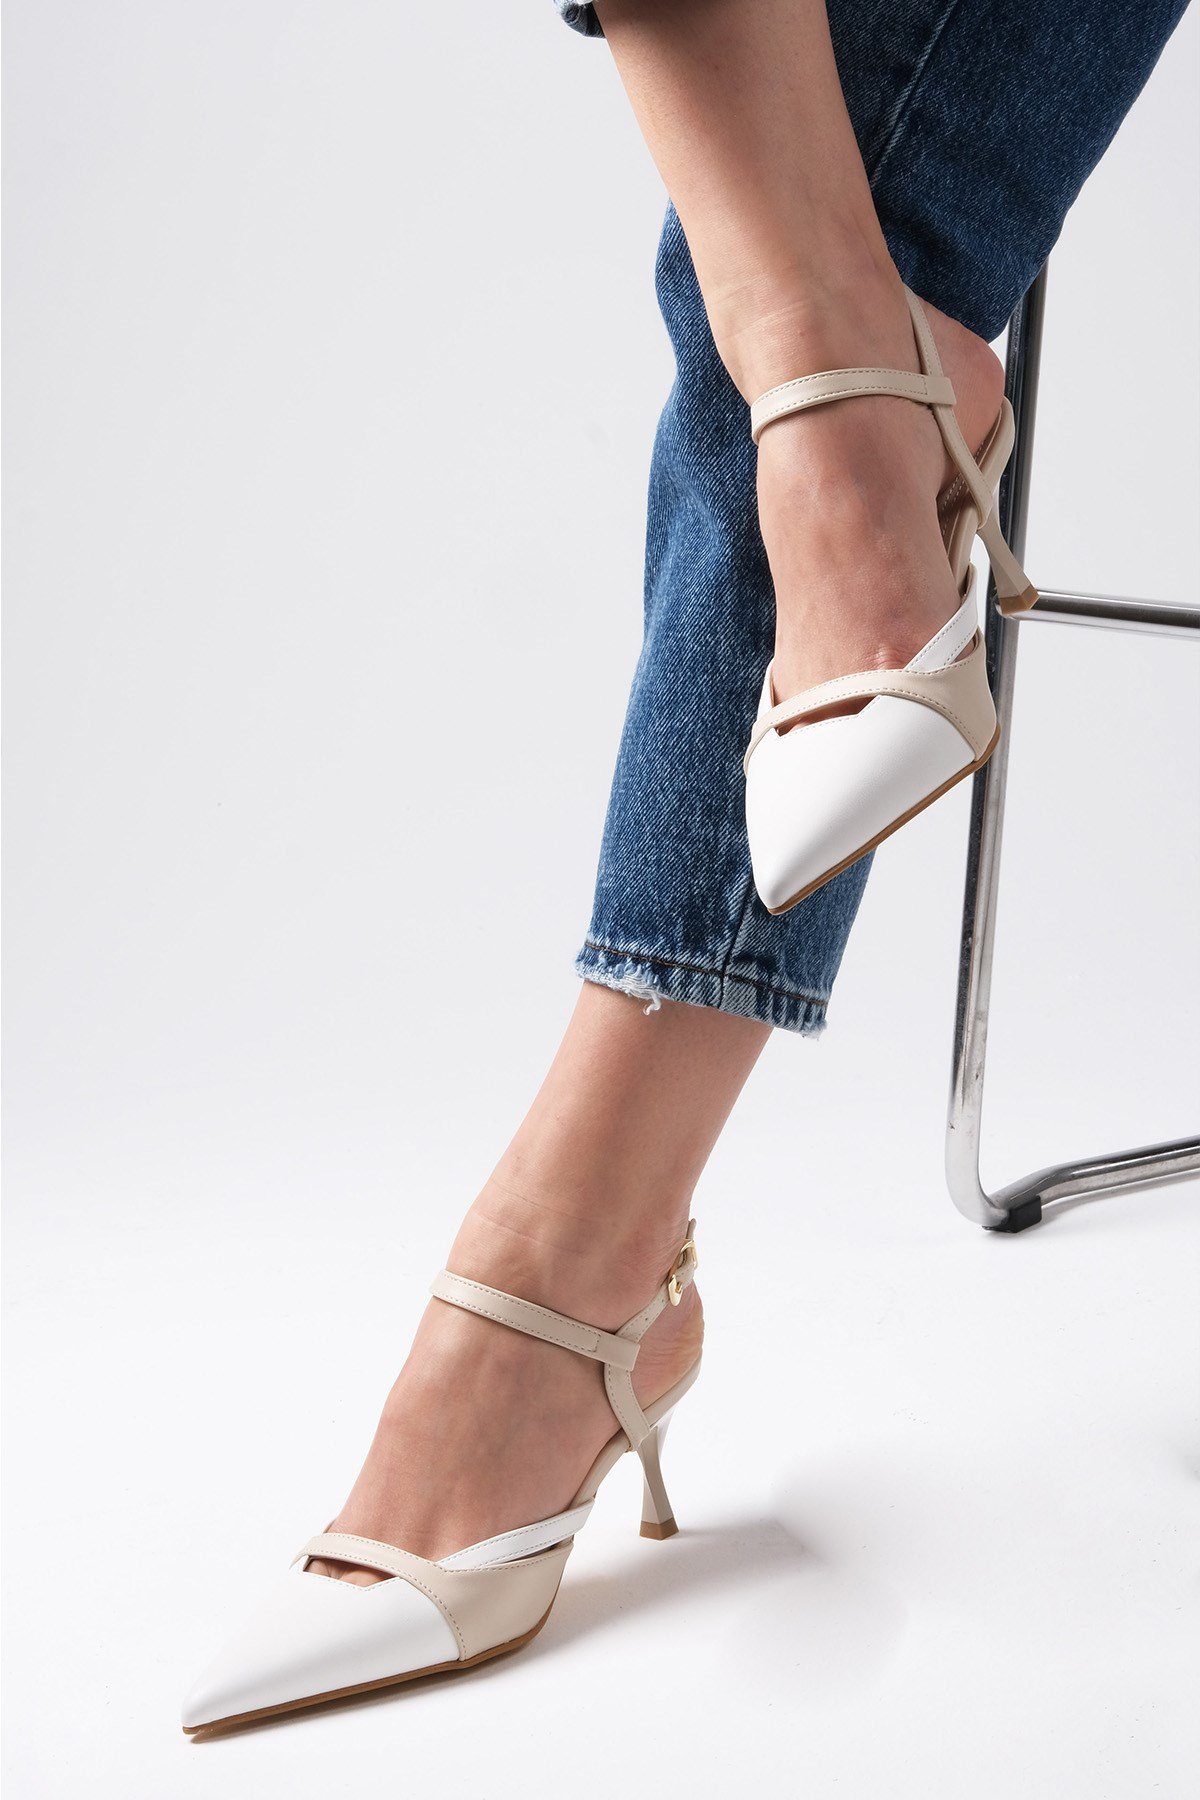 Mio Gusto Beyaz ve Bej Renk Arkası Açık Topuklu Ayakkabı